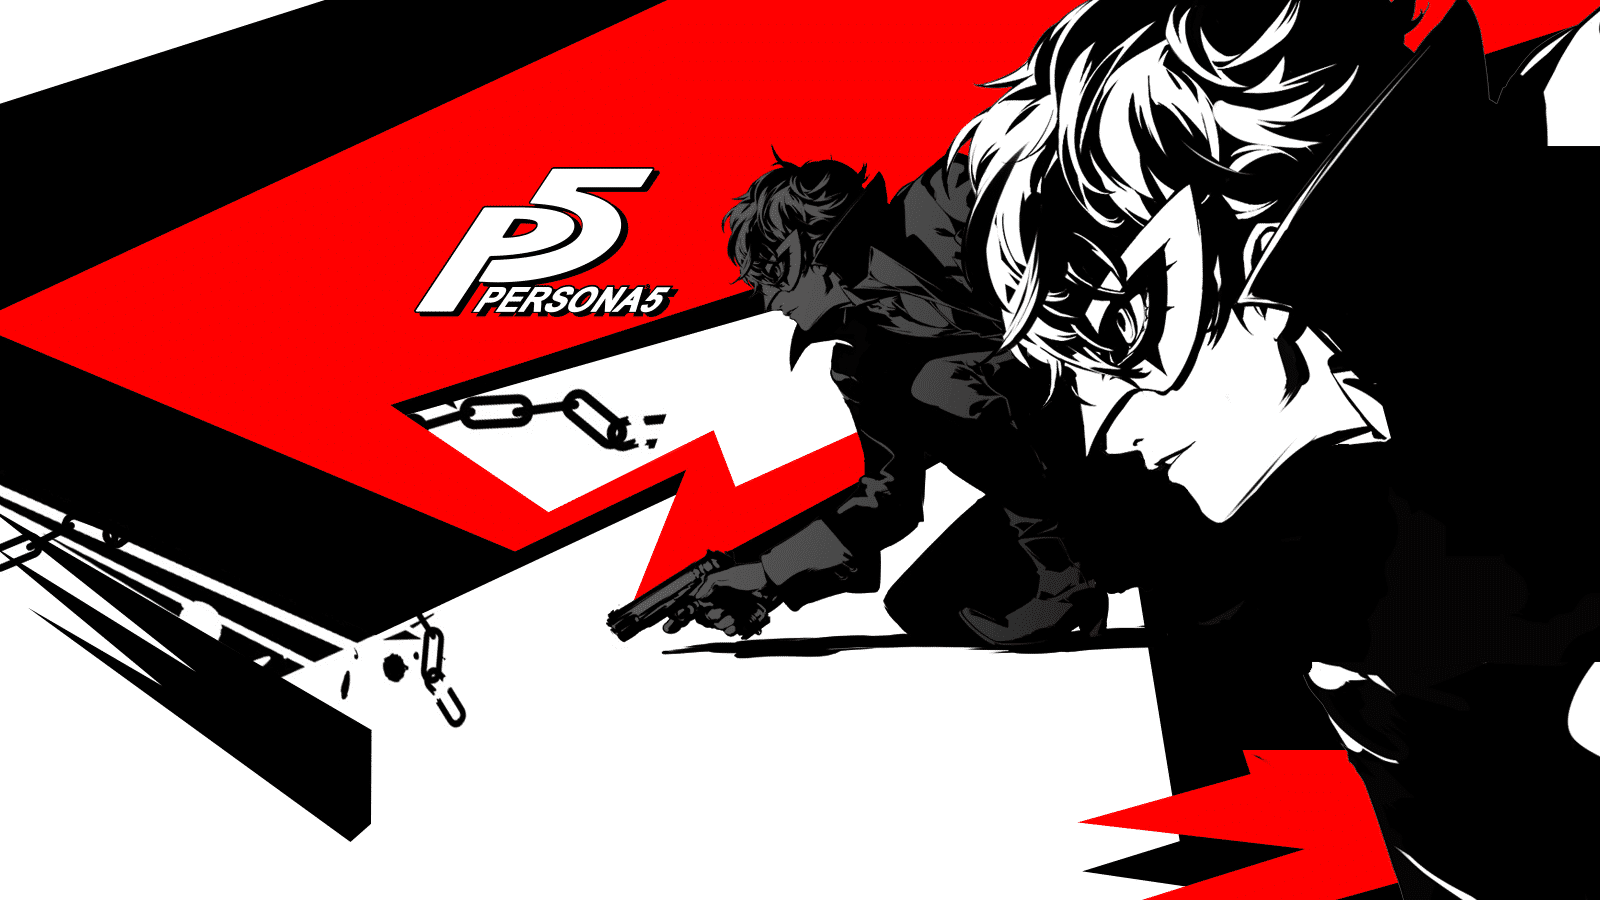 Persona 5 Artwork